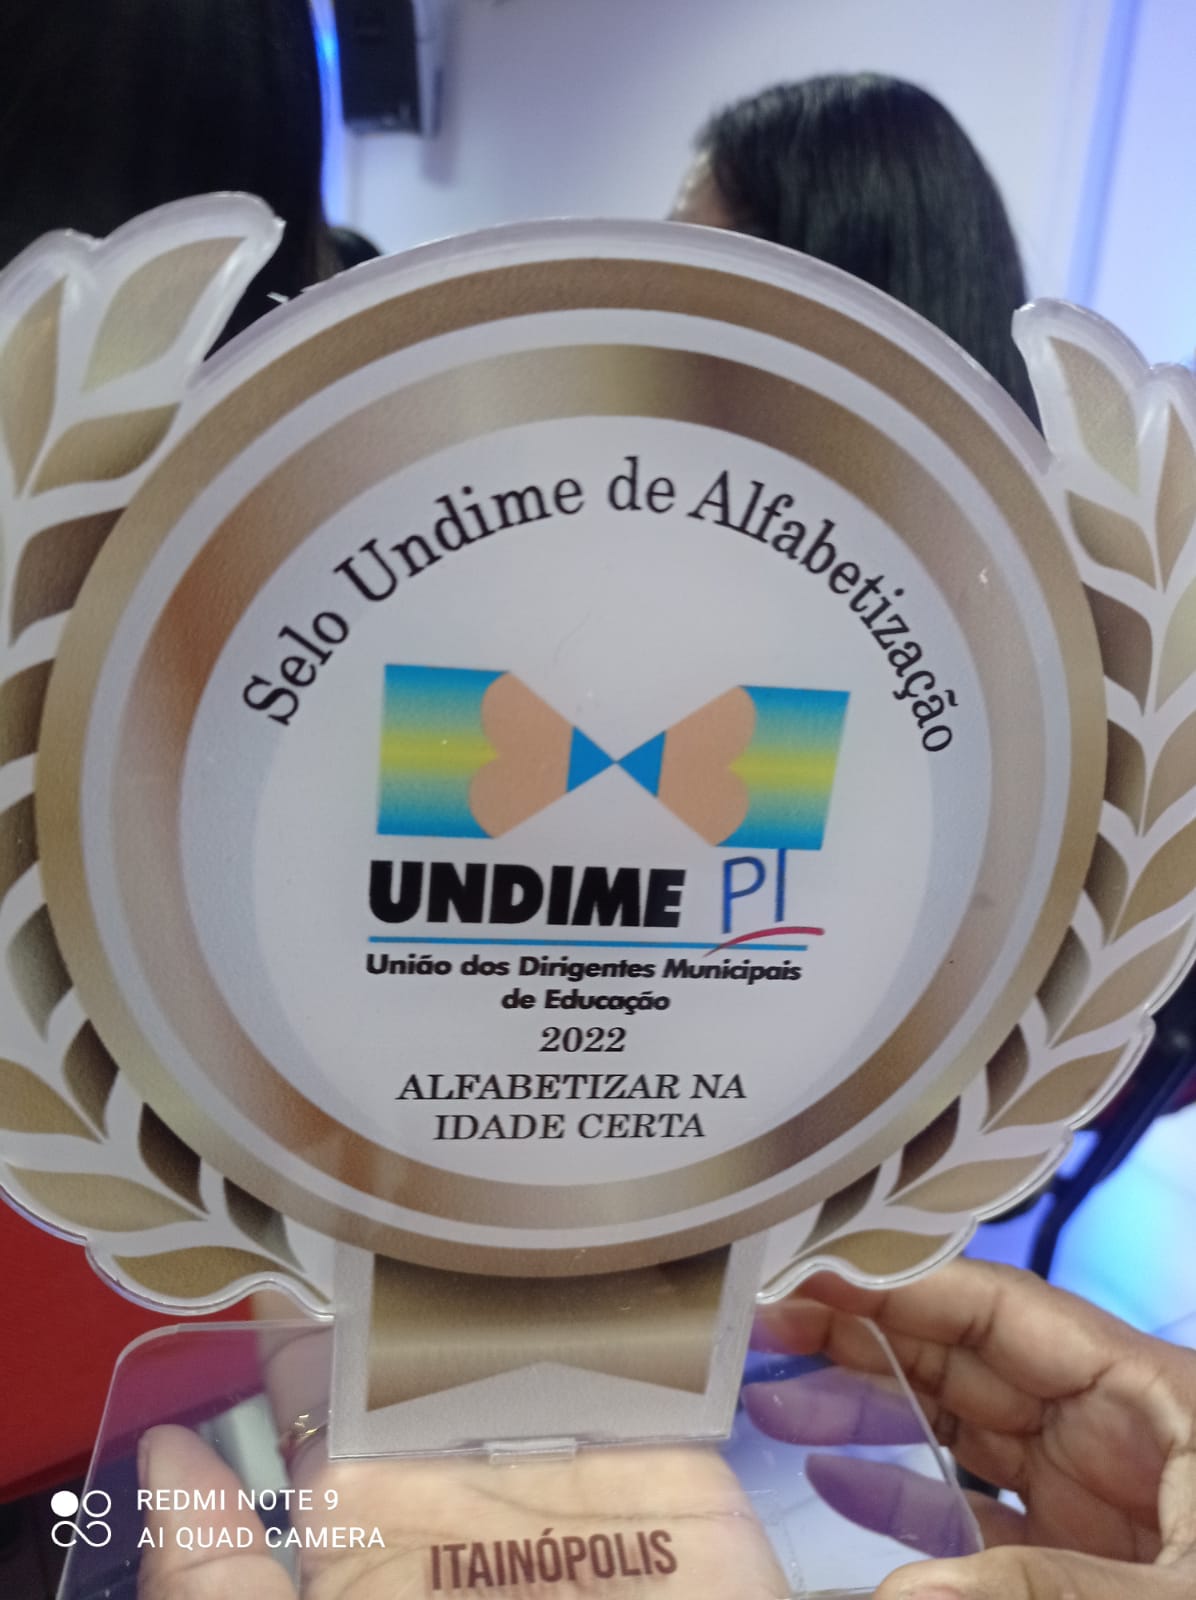 Itainópolis-PI ganha “Prêmio Gestor Educador” - Imagem 2